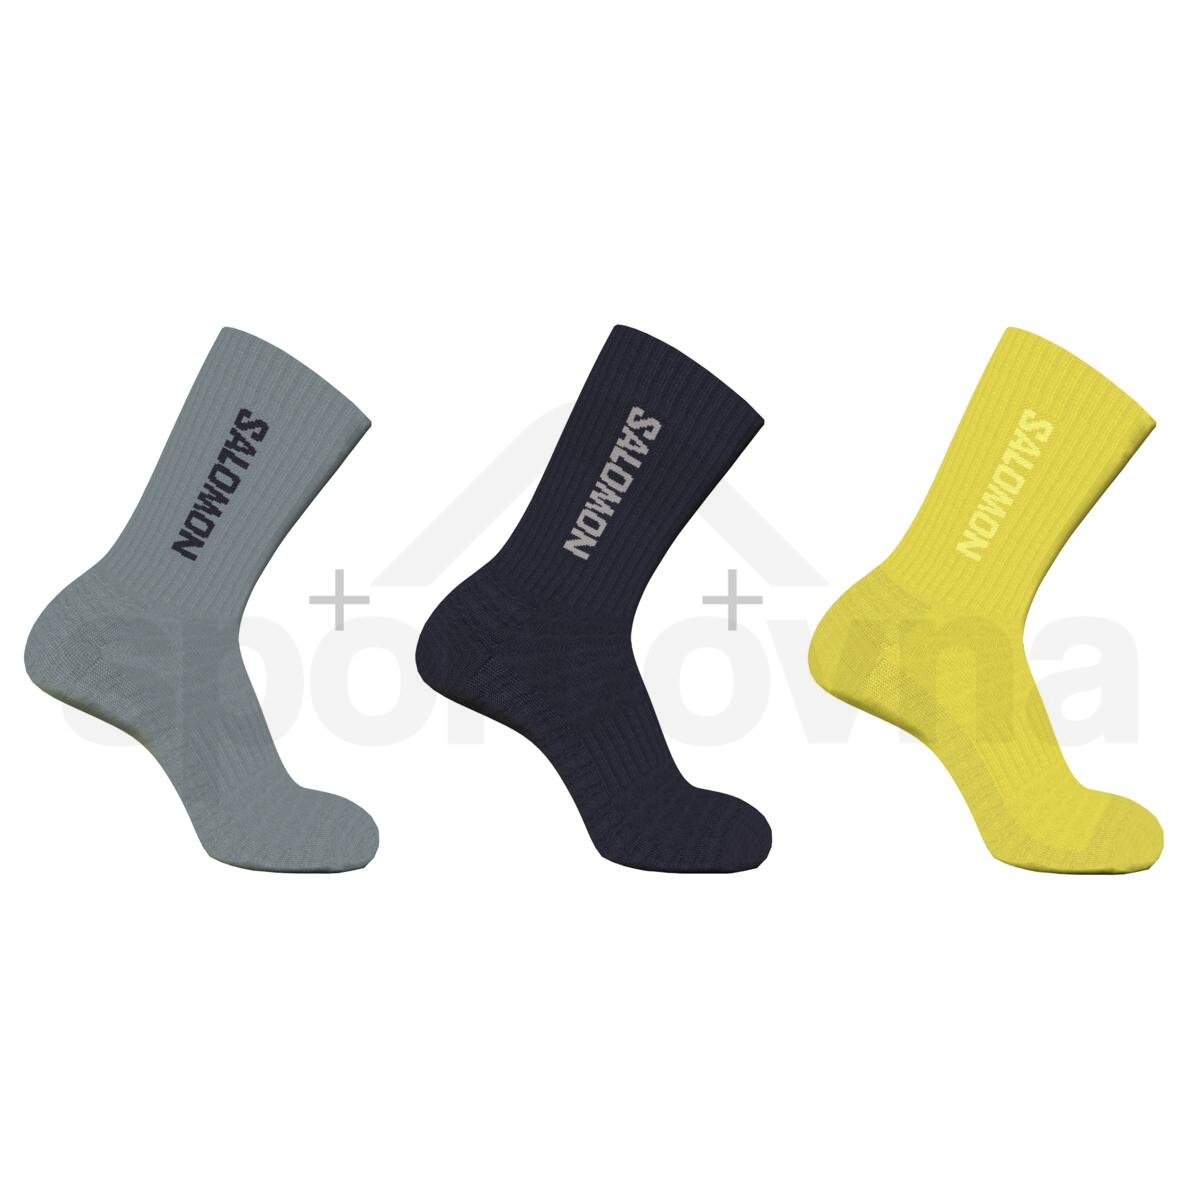 Ponožky Salomon Everyday Crew 3-Pack - šedá/černá/žlutá